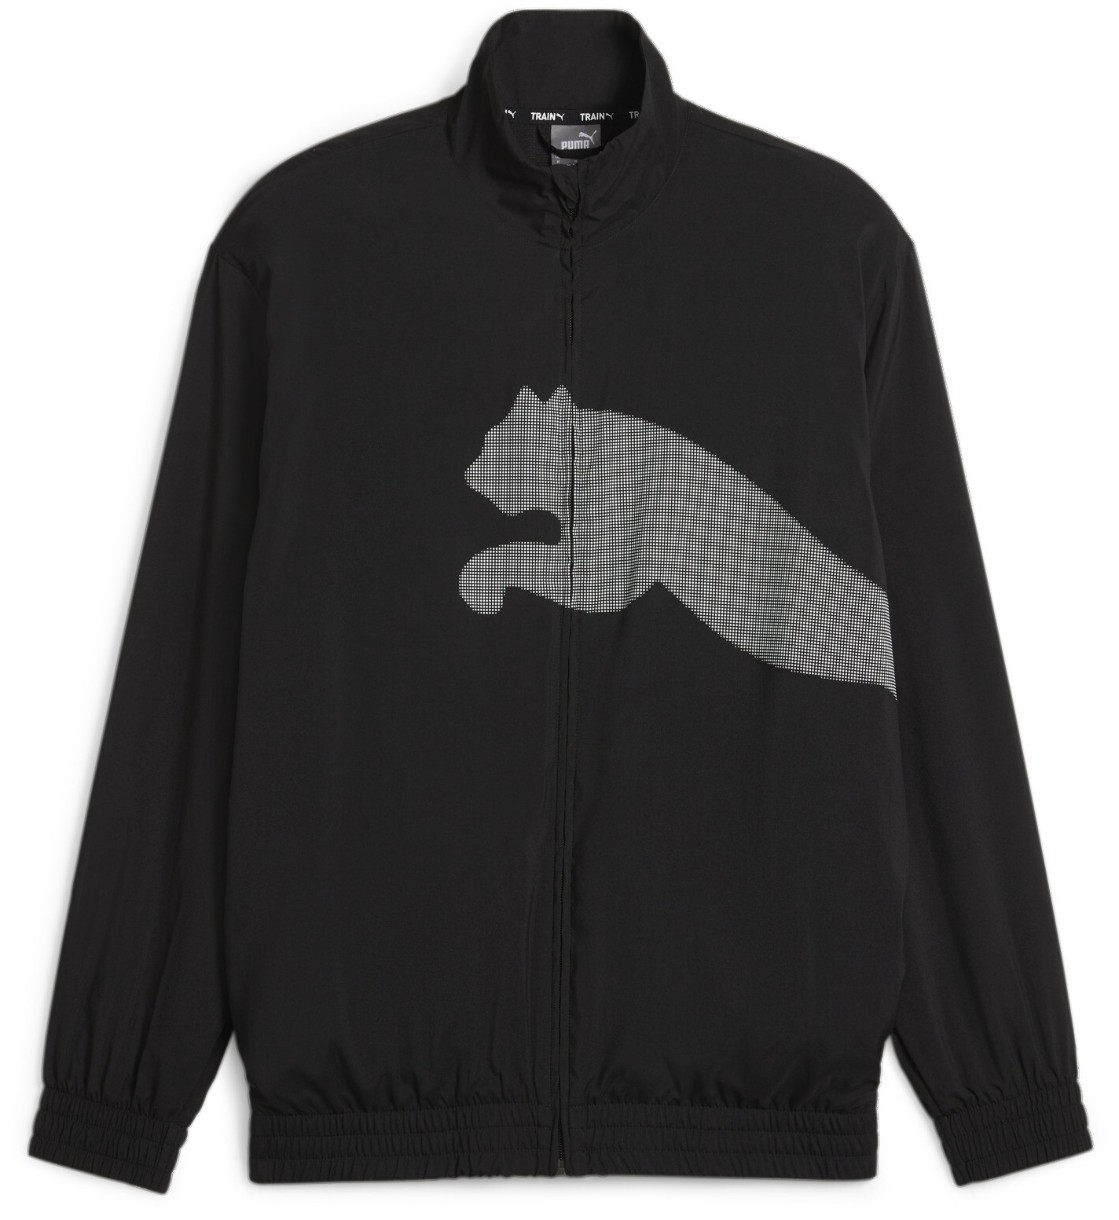 Jachetă pentru bărbați Puma Train Big Cat Woven Fz Jacket Puma Black XXL